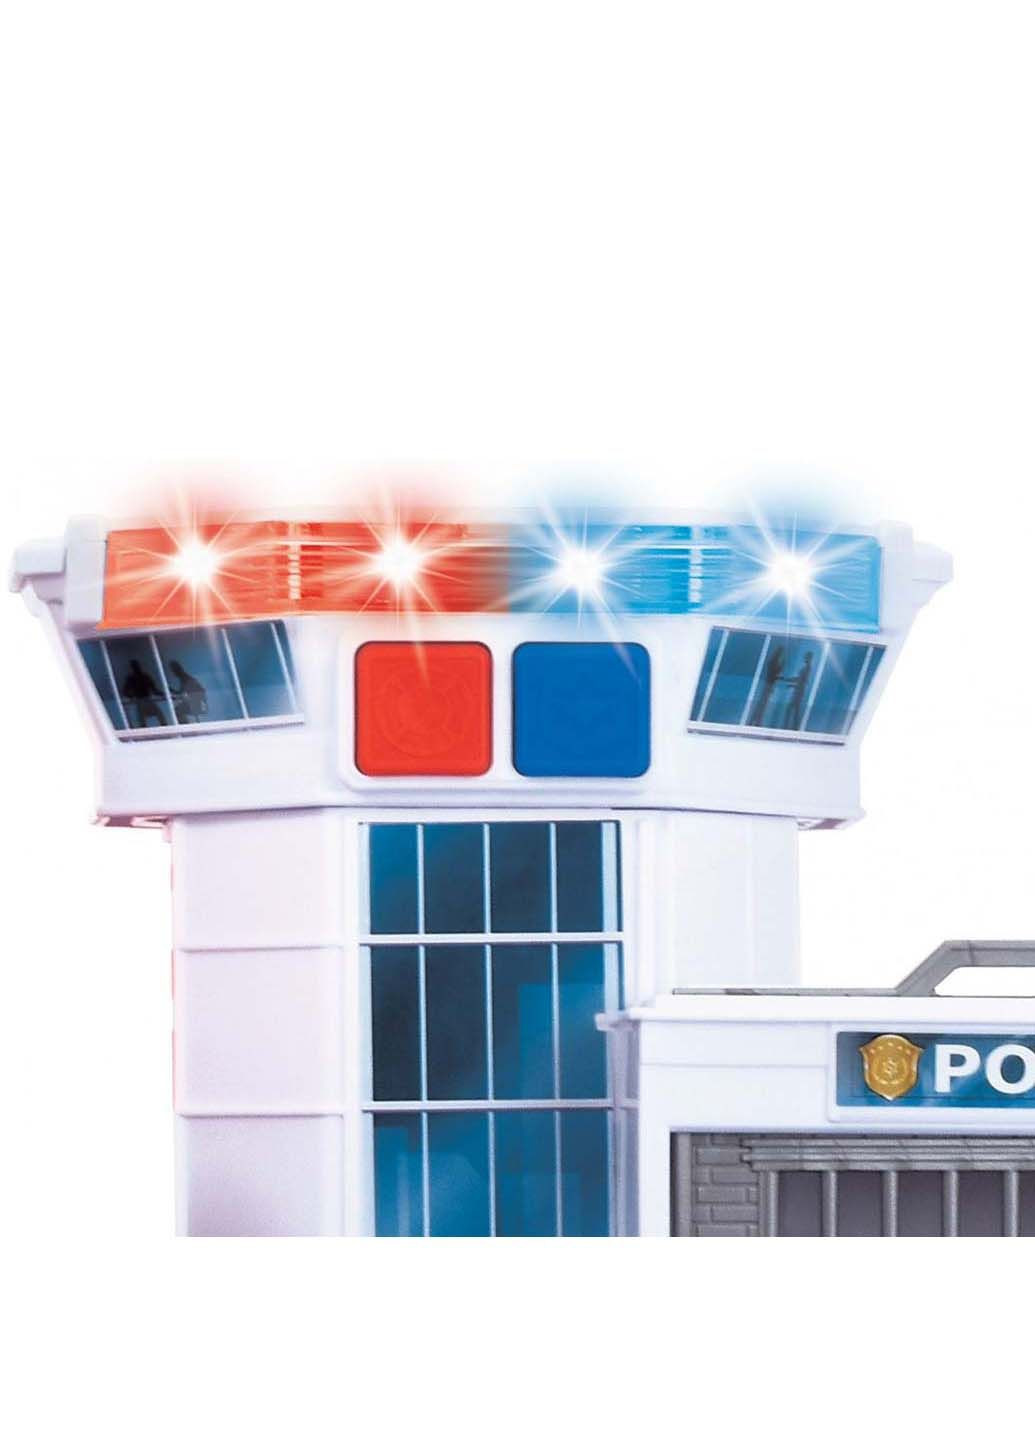 Набір пожежна частина та поліцейська ділянка зі звуковими та світловими ефектами 18х52х23 см Dickie toys (278082673)